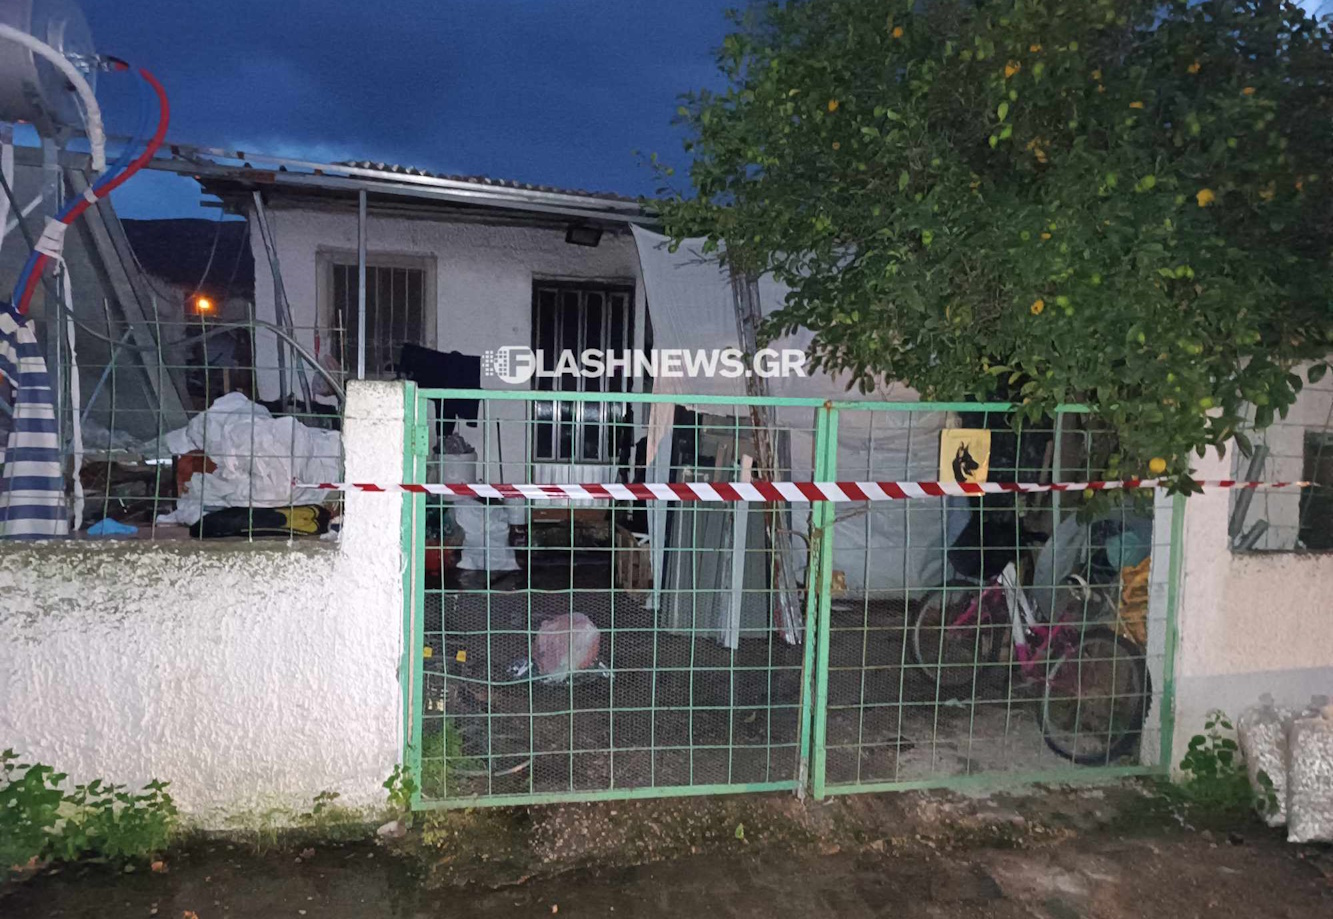 Χανιά: Τραγικός θάνατος για άνδρα μετά από φωτιά στο σπίτι του